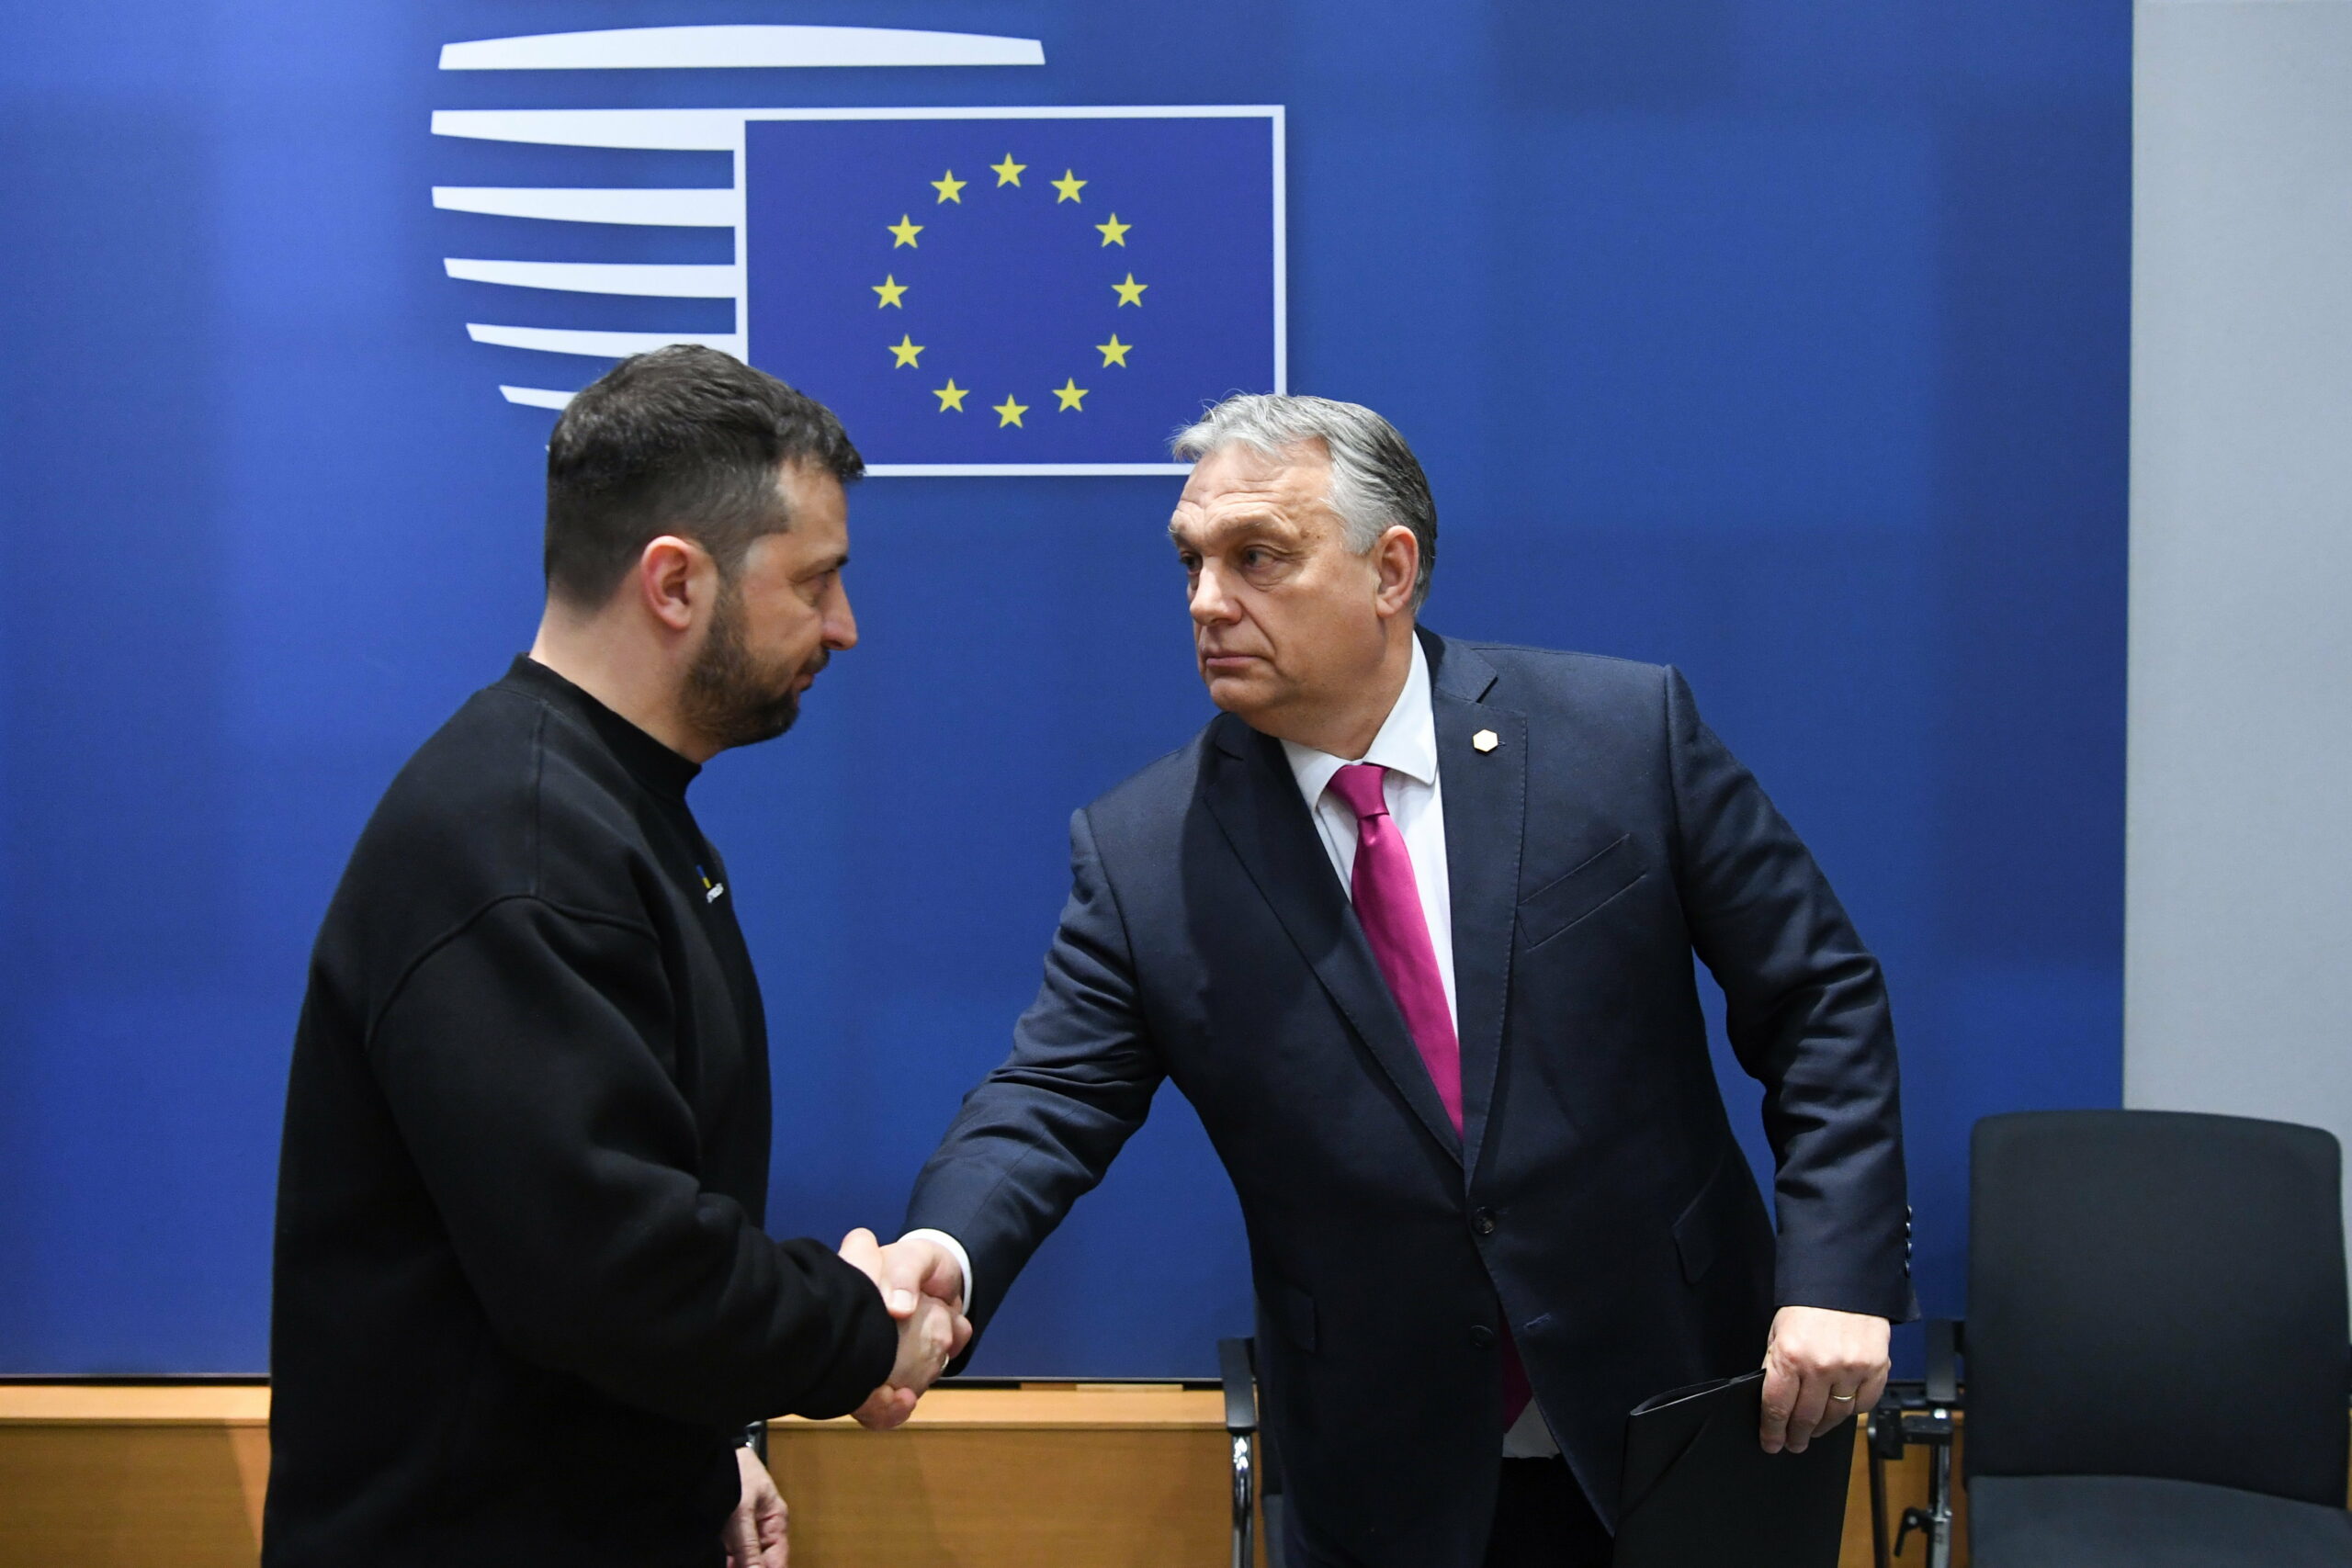 Alakul az Orbán-Zelenszkij találkozó? Szijjártó Péter telefonon egyeztetett az ukrán elnök kabinetfőnökével